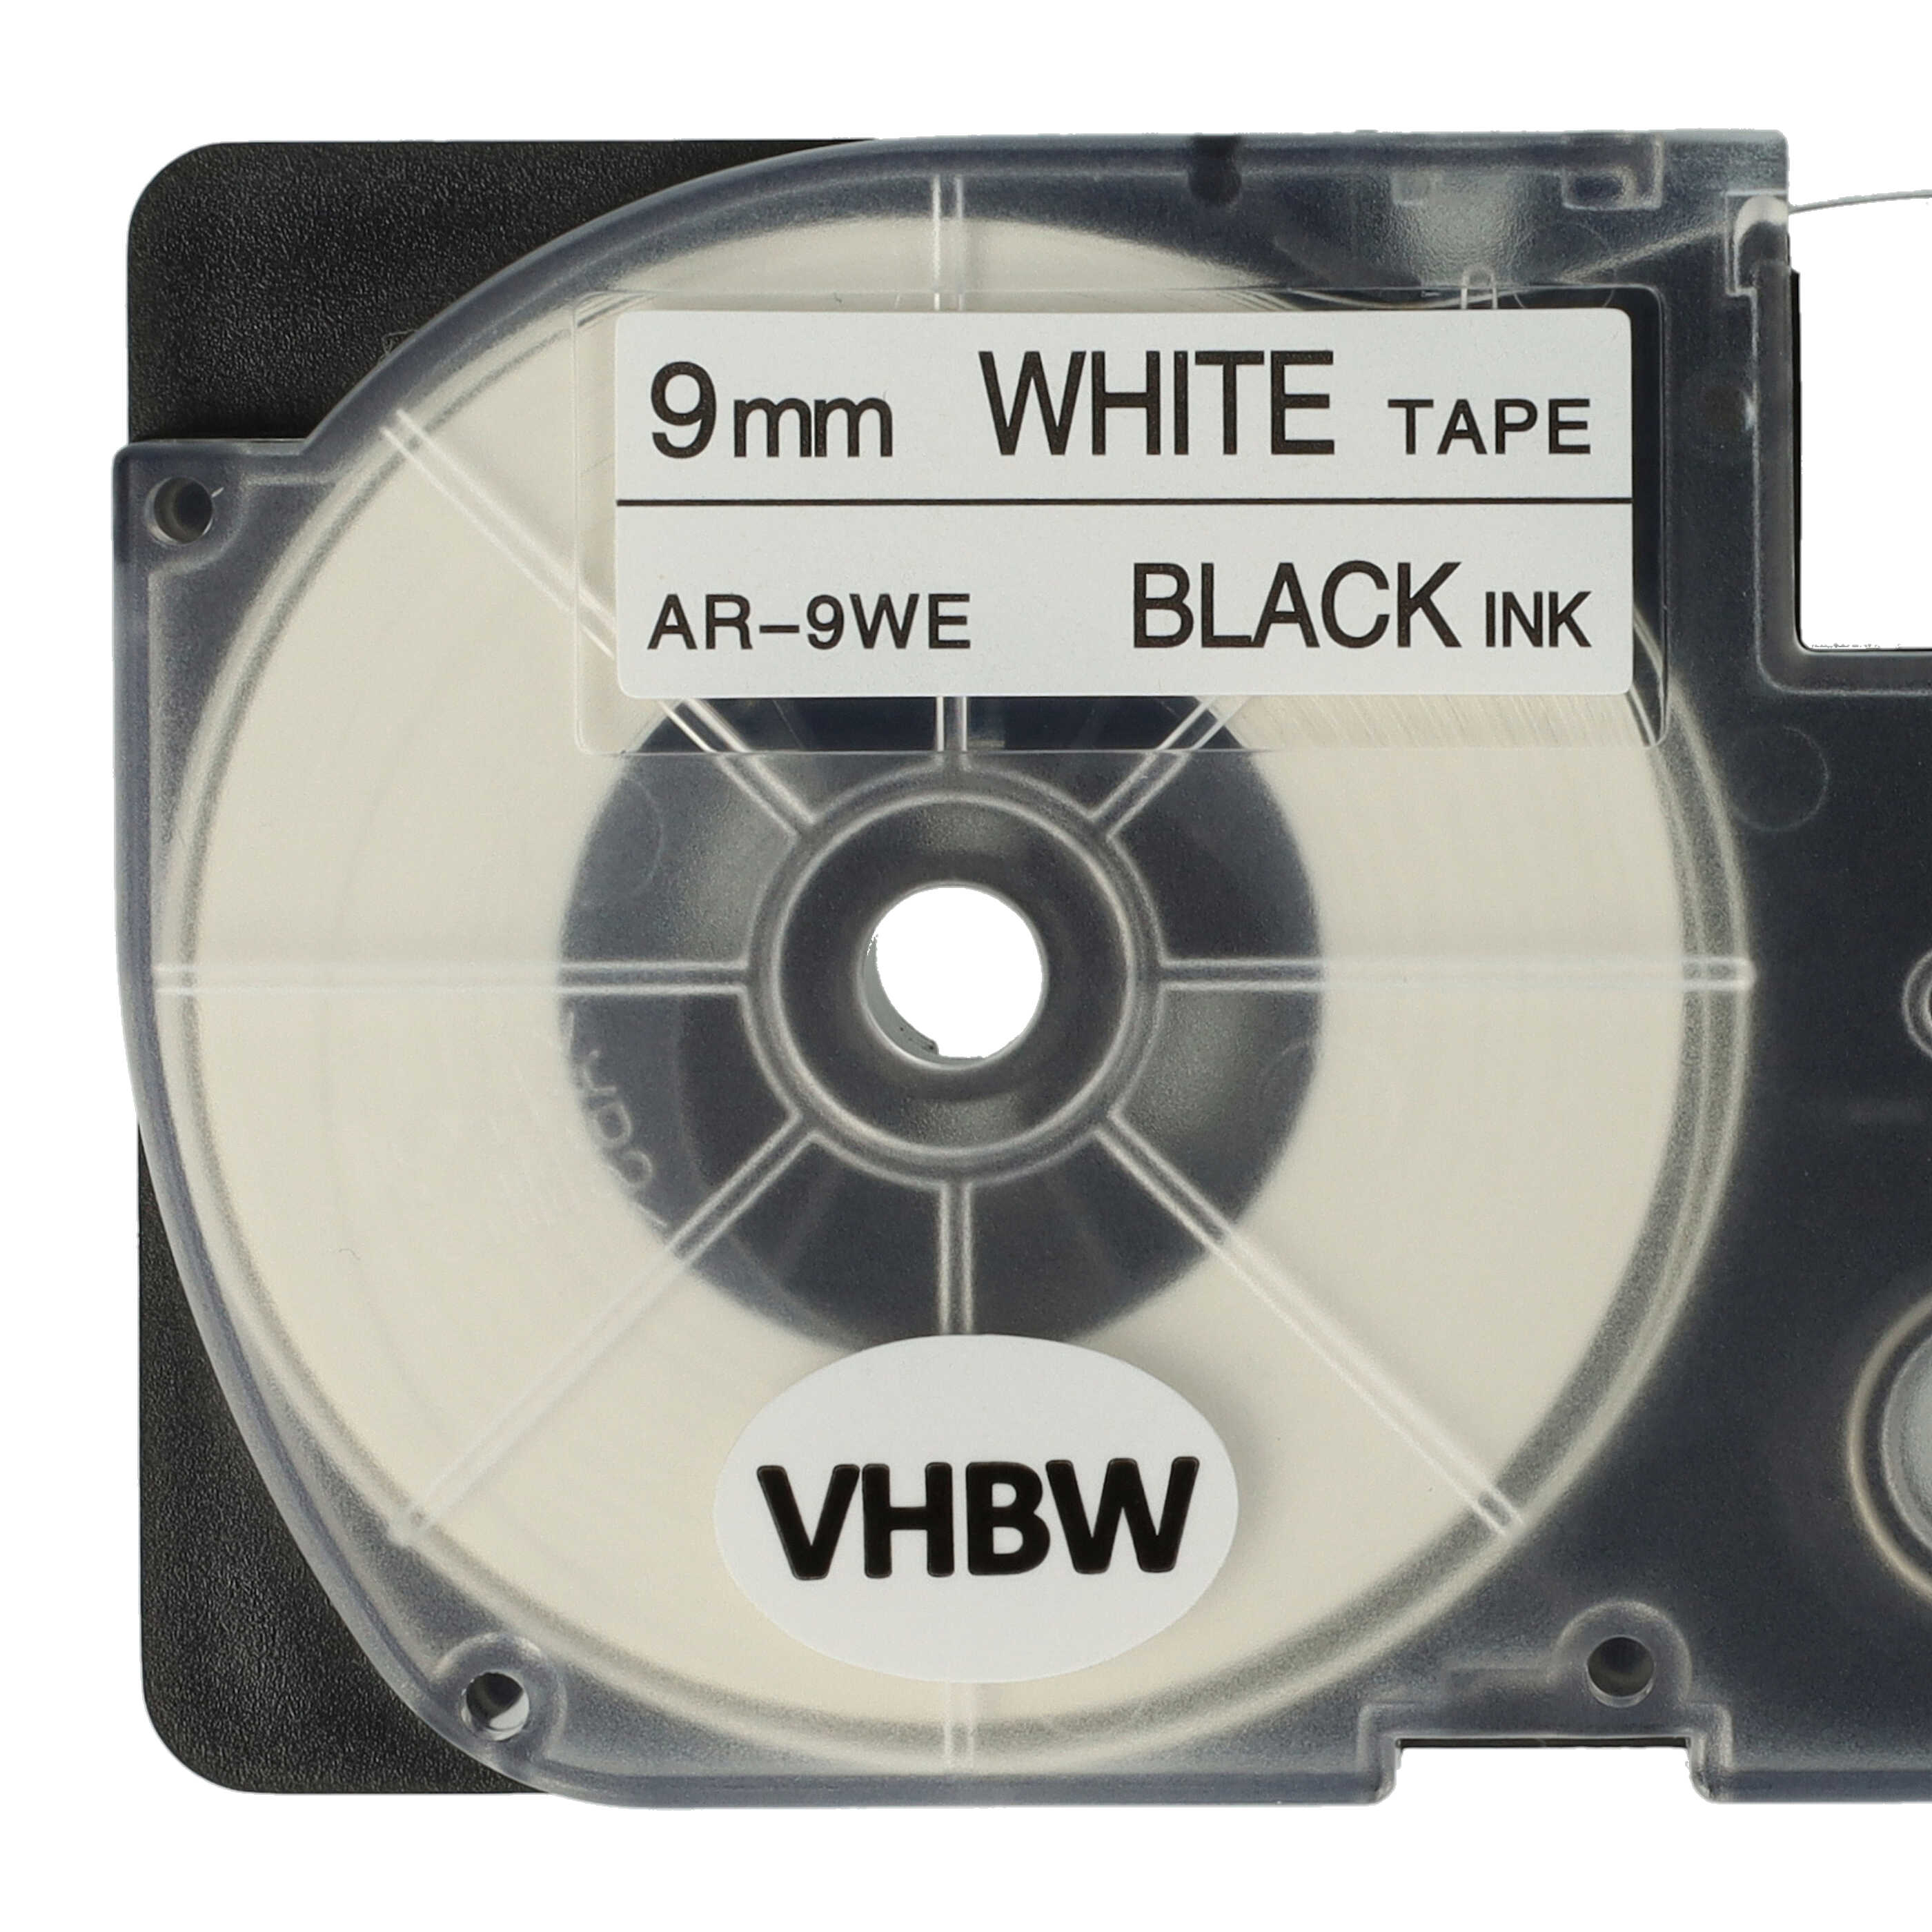 2x Casete cinta escritura reemplaza Casio XR-9WE1 Negro su Blanco